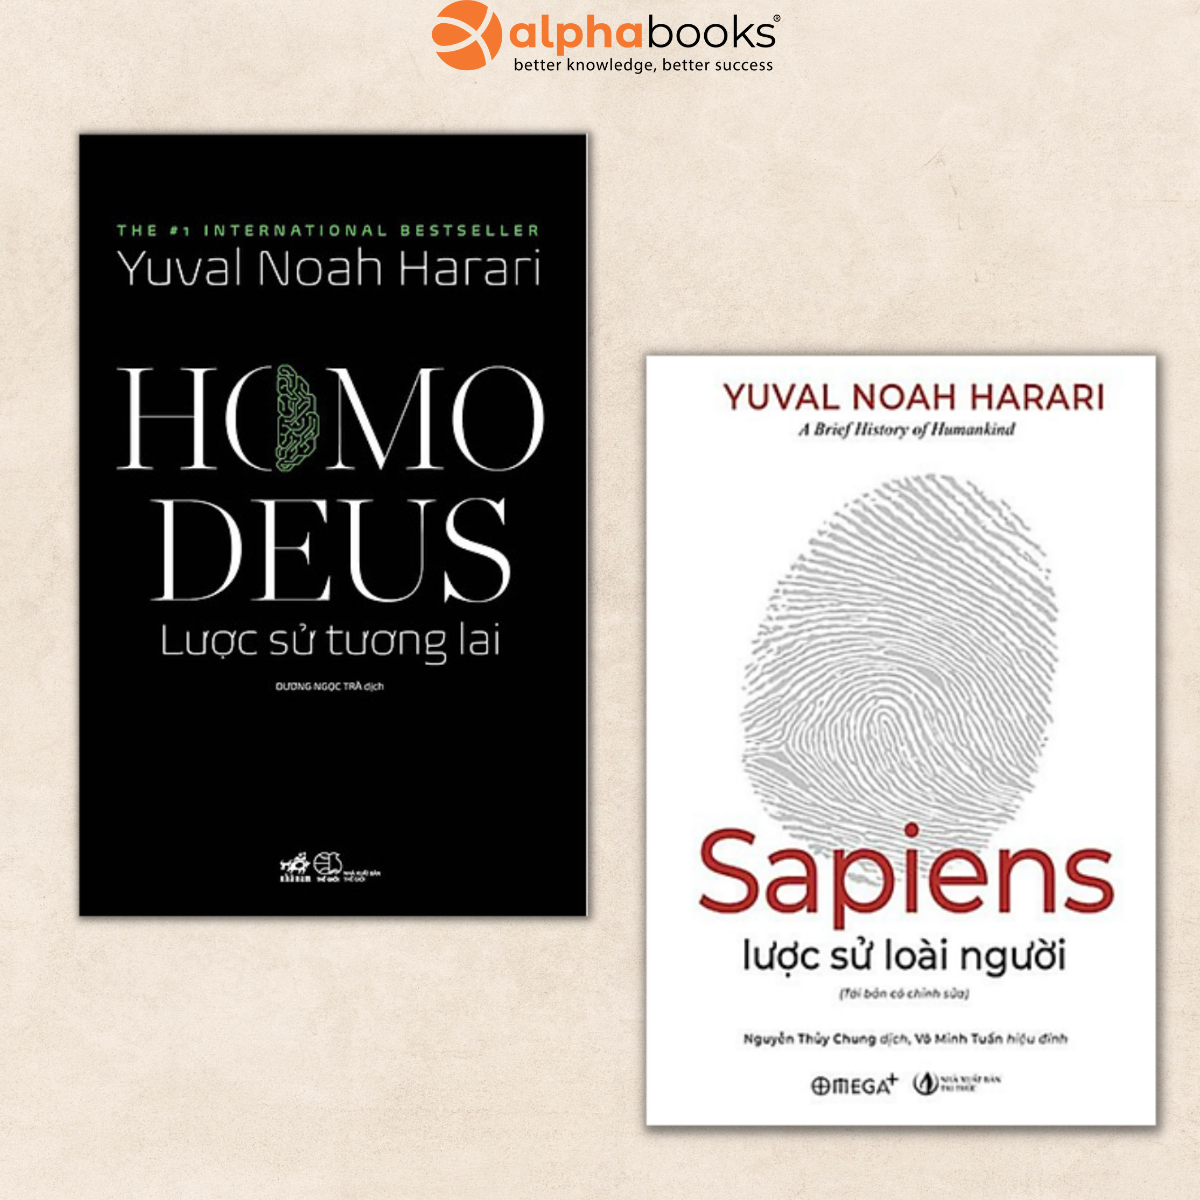 Combo 2 cuốn lược sử hay nhất:  Sapiens: Lược Sử Loài Người và Homo Deus: Lược Sử Tương Lai (tặng kèm bookmark thiết kế)